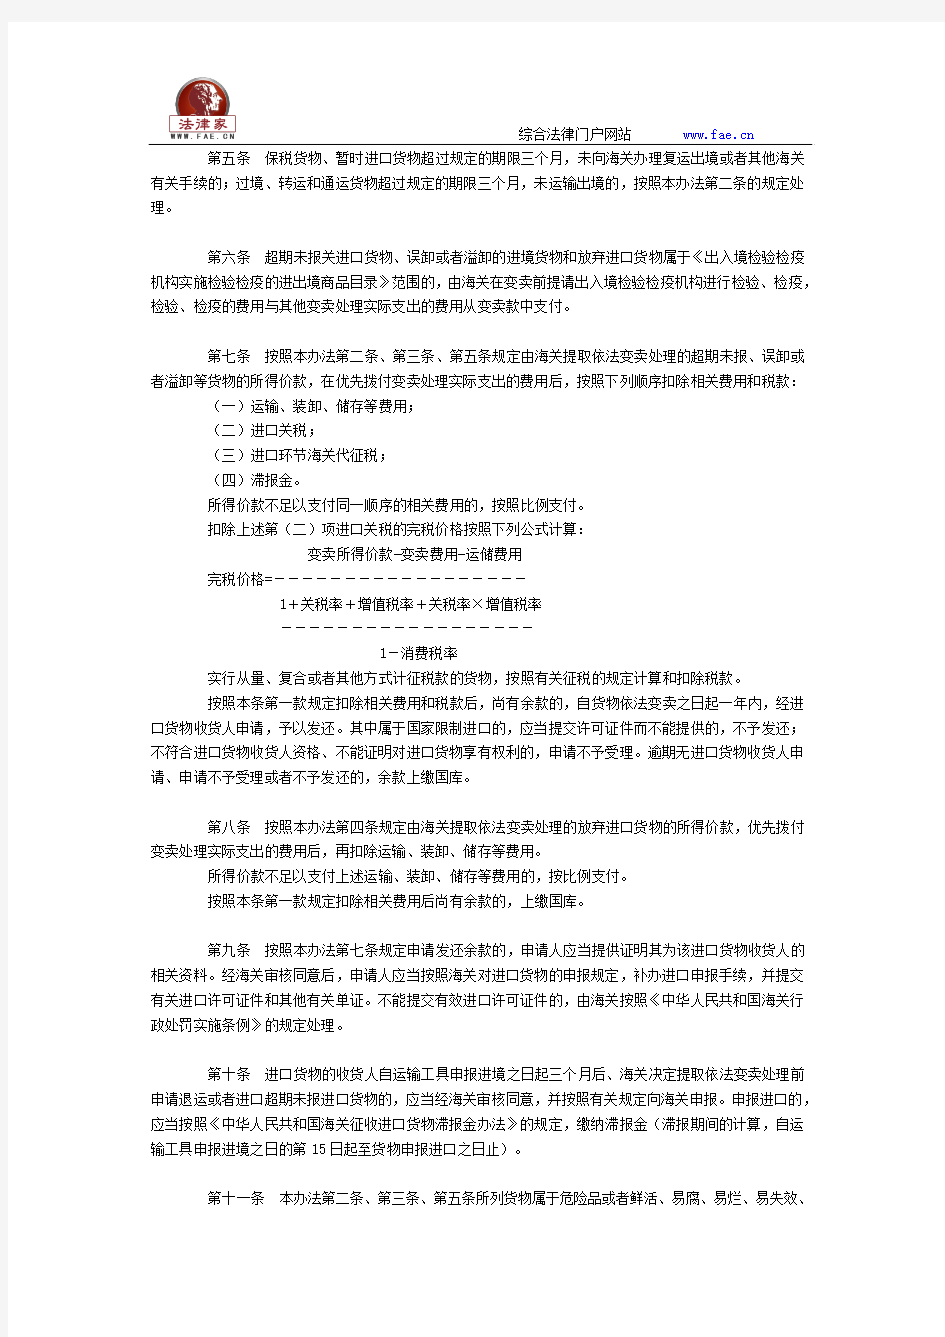 中华人民共和国关于超期关进口货物、误者的进境货物和放弃进口货物的处理办法2014修改全文--国务院部委规章